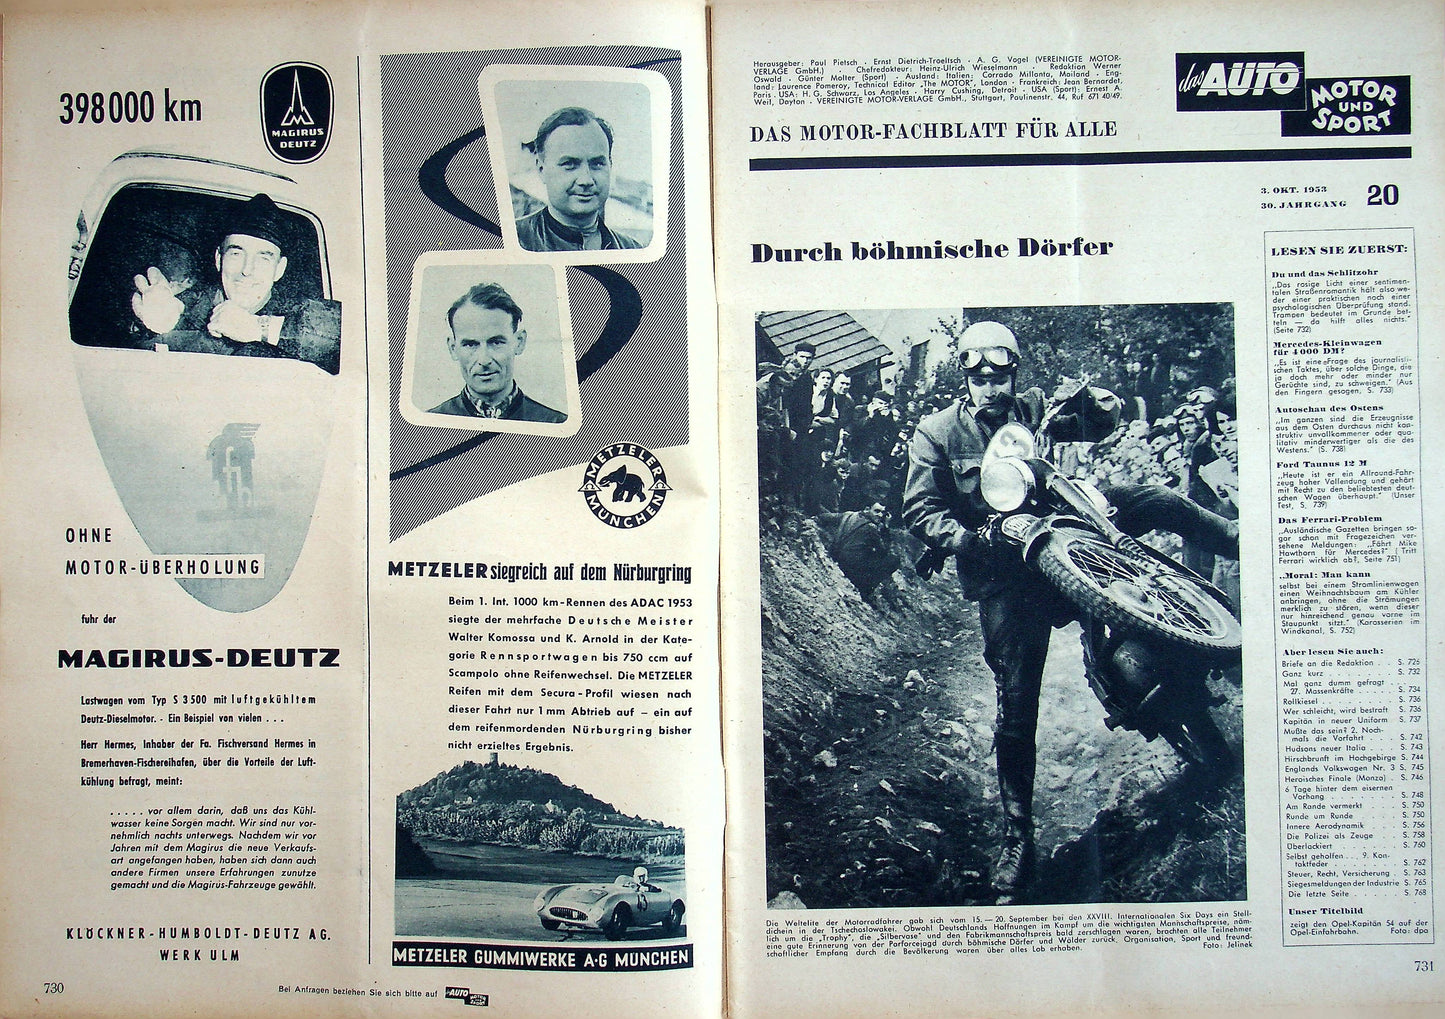 Auto Motor und Sport 20/1953